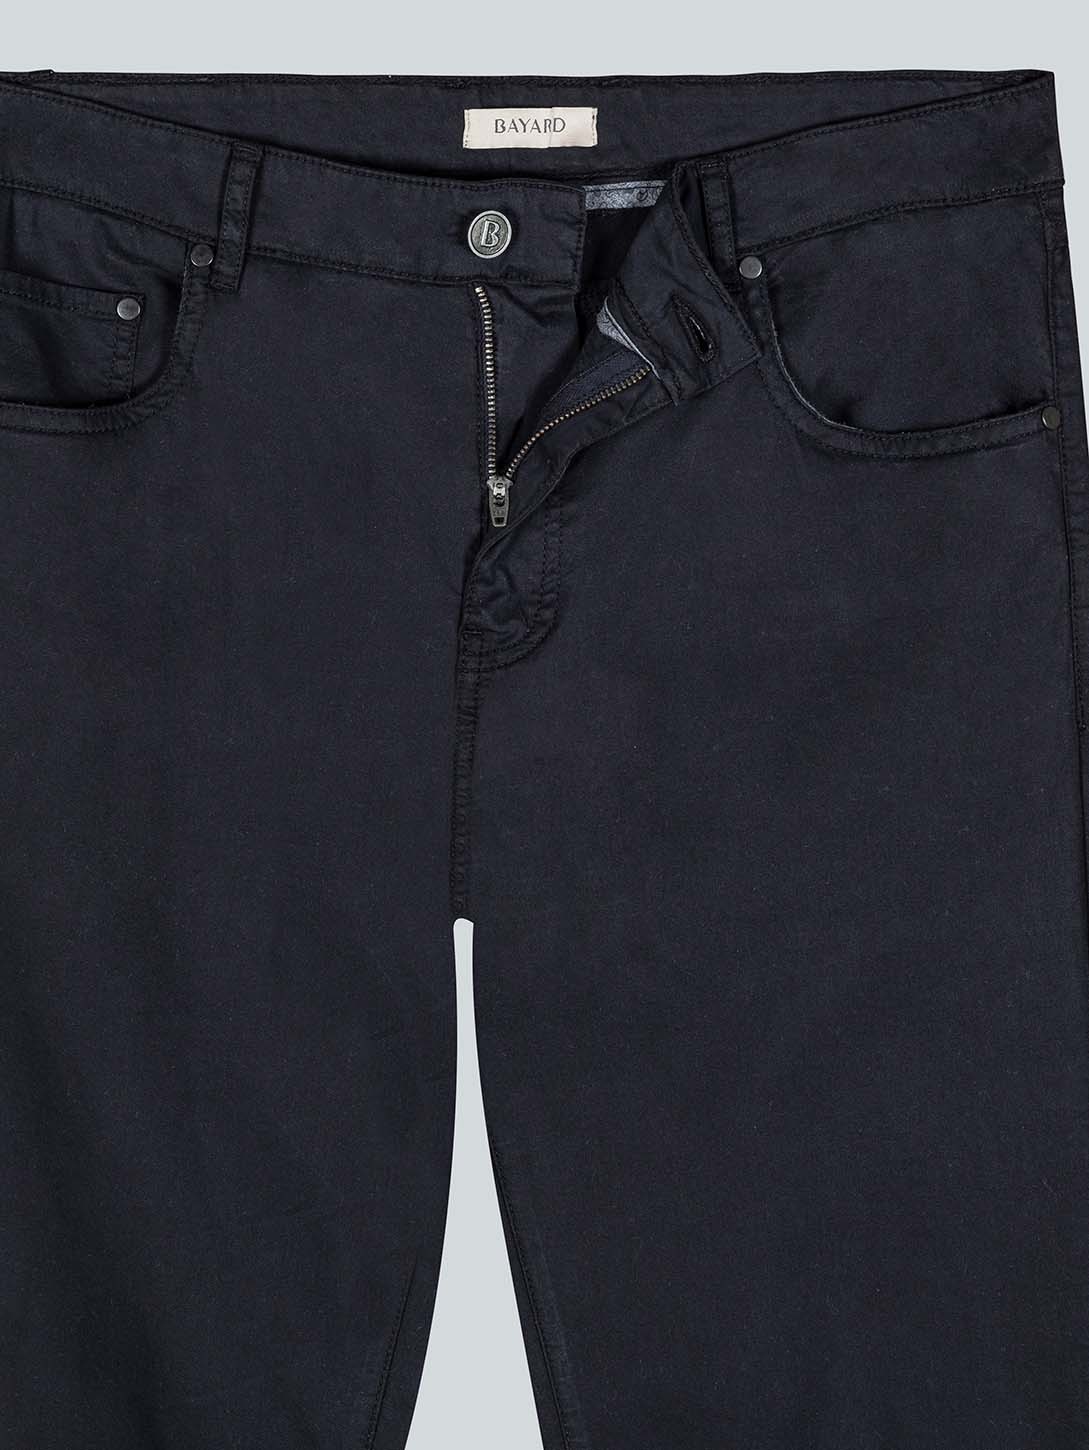 Pantalon 5 poches marine